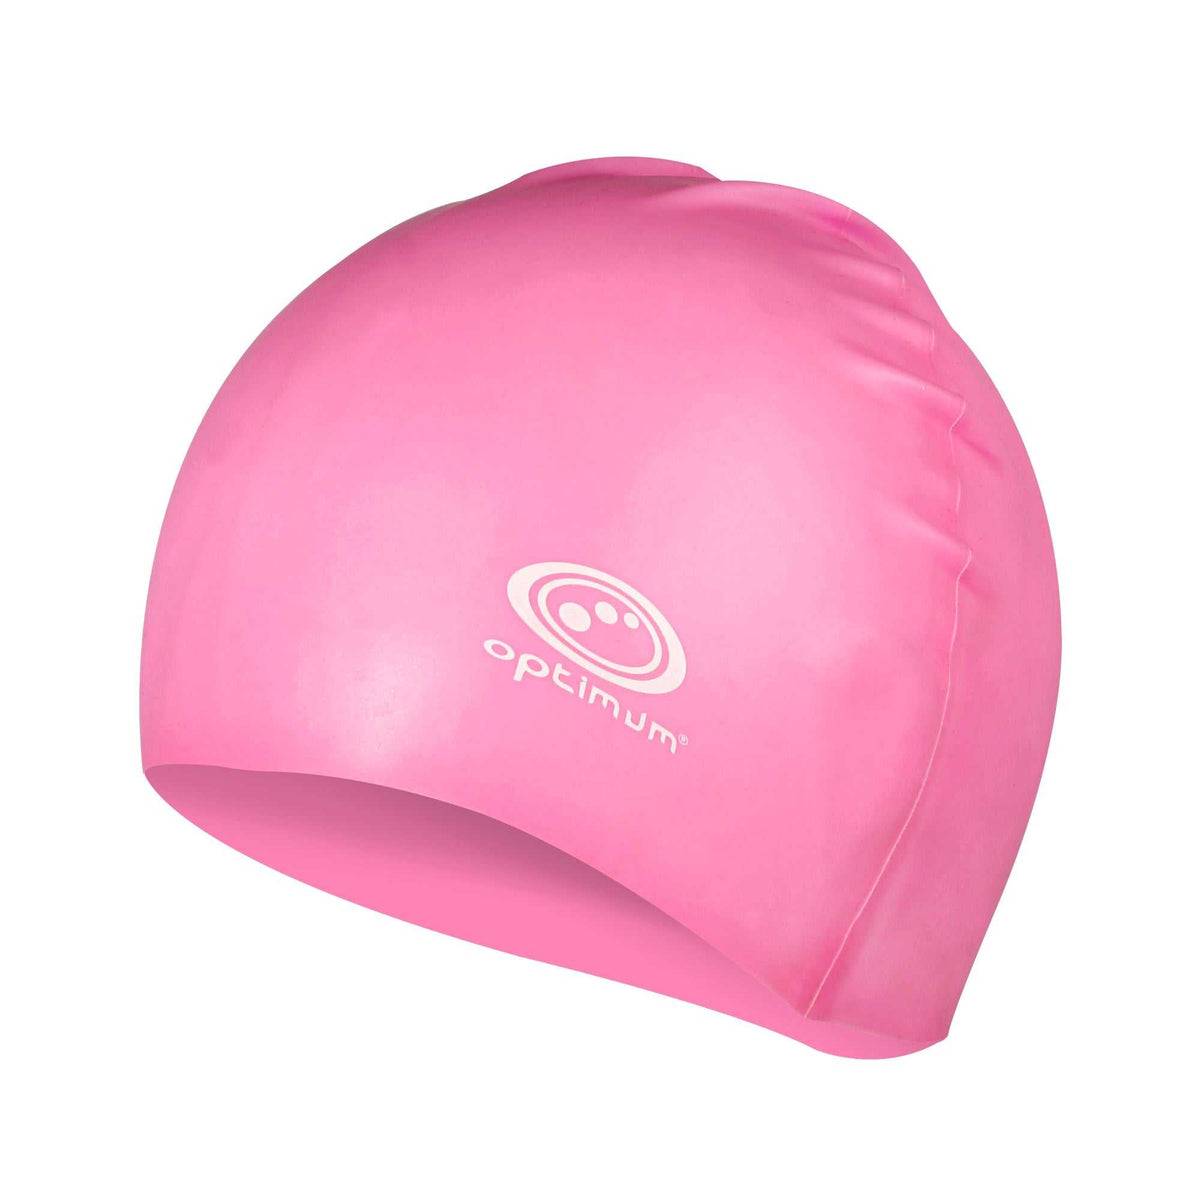 Optimum Sport Swimming Cap Durable Silicone Headgear - Pink - Optimum